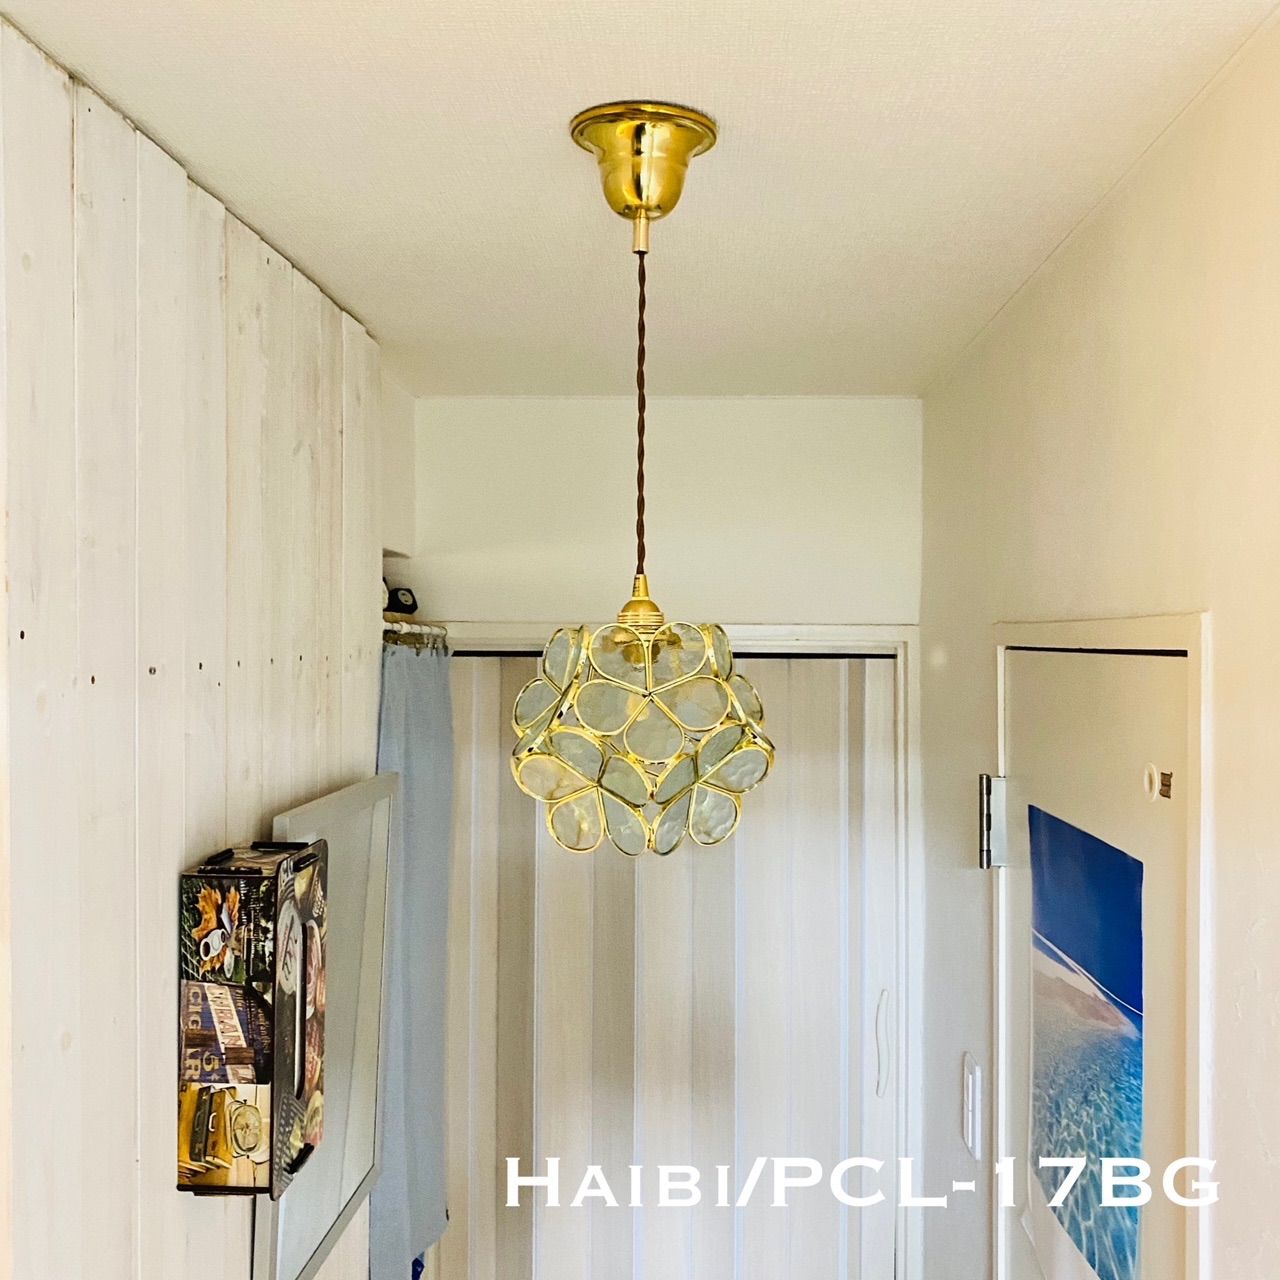 天井照明 Haibi/PCLBG ハイビ ペンダントライト コード調節収納 - メルカリ